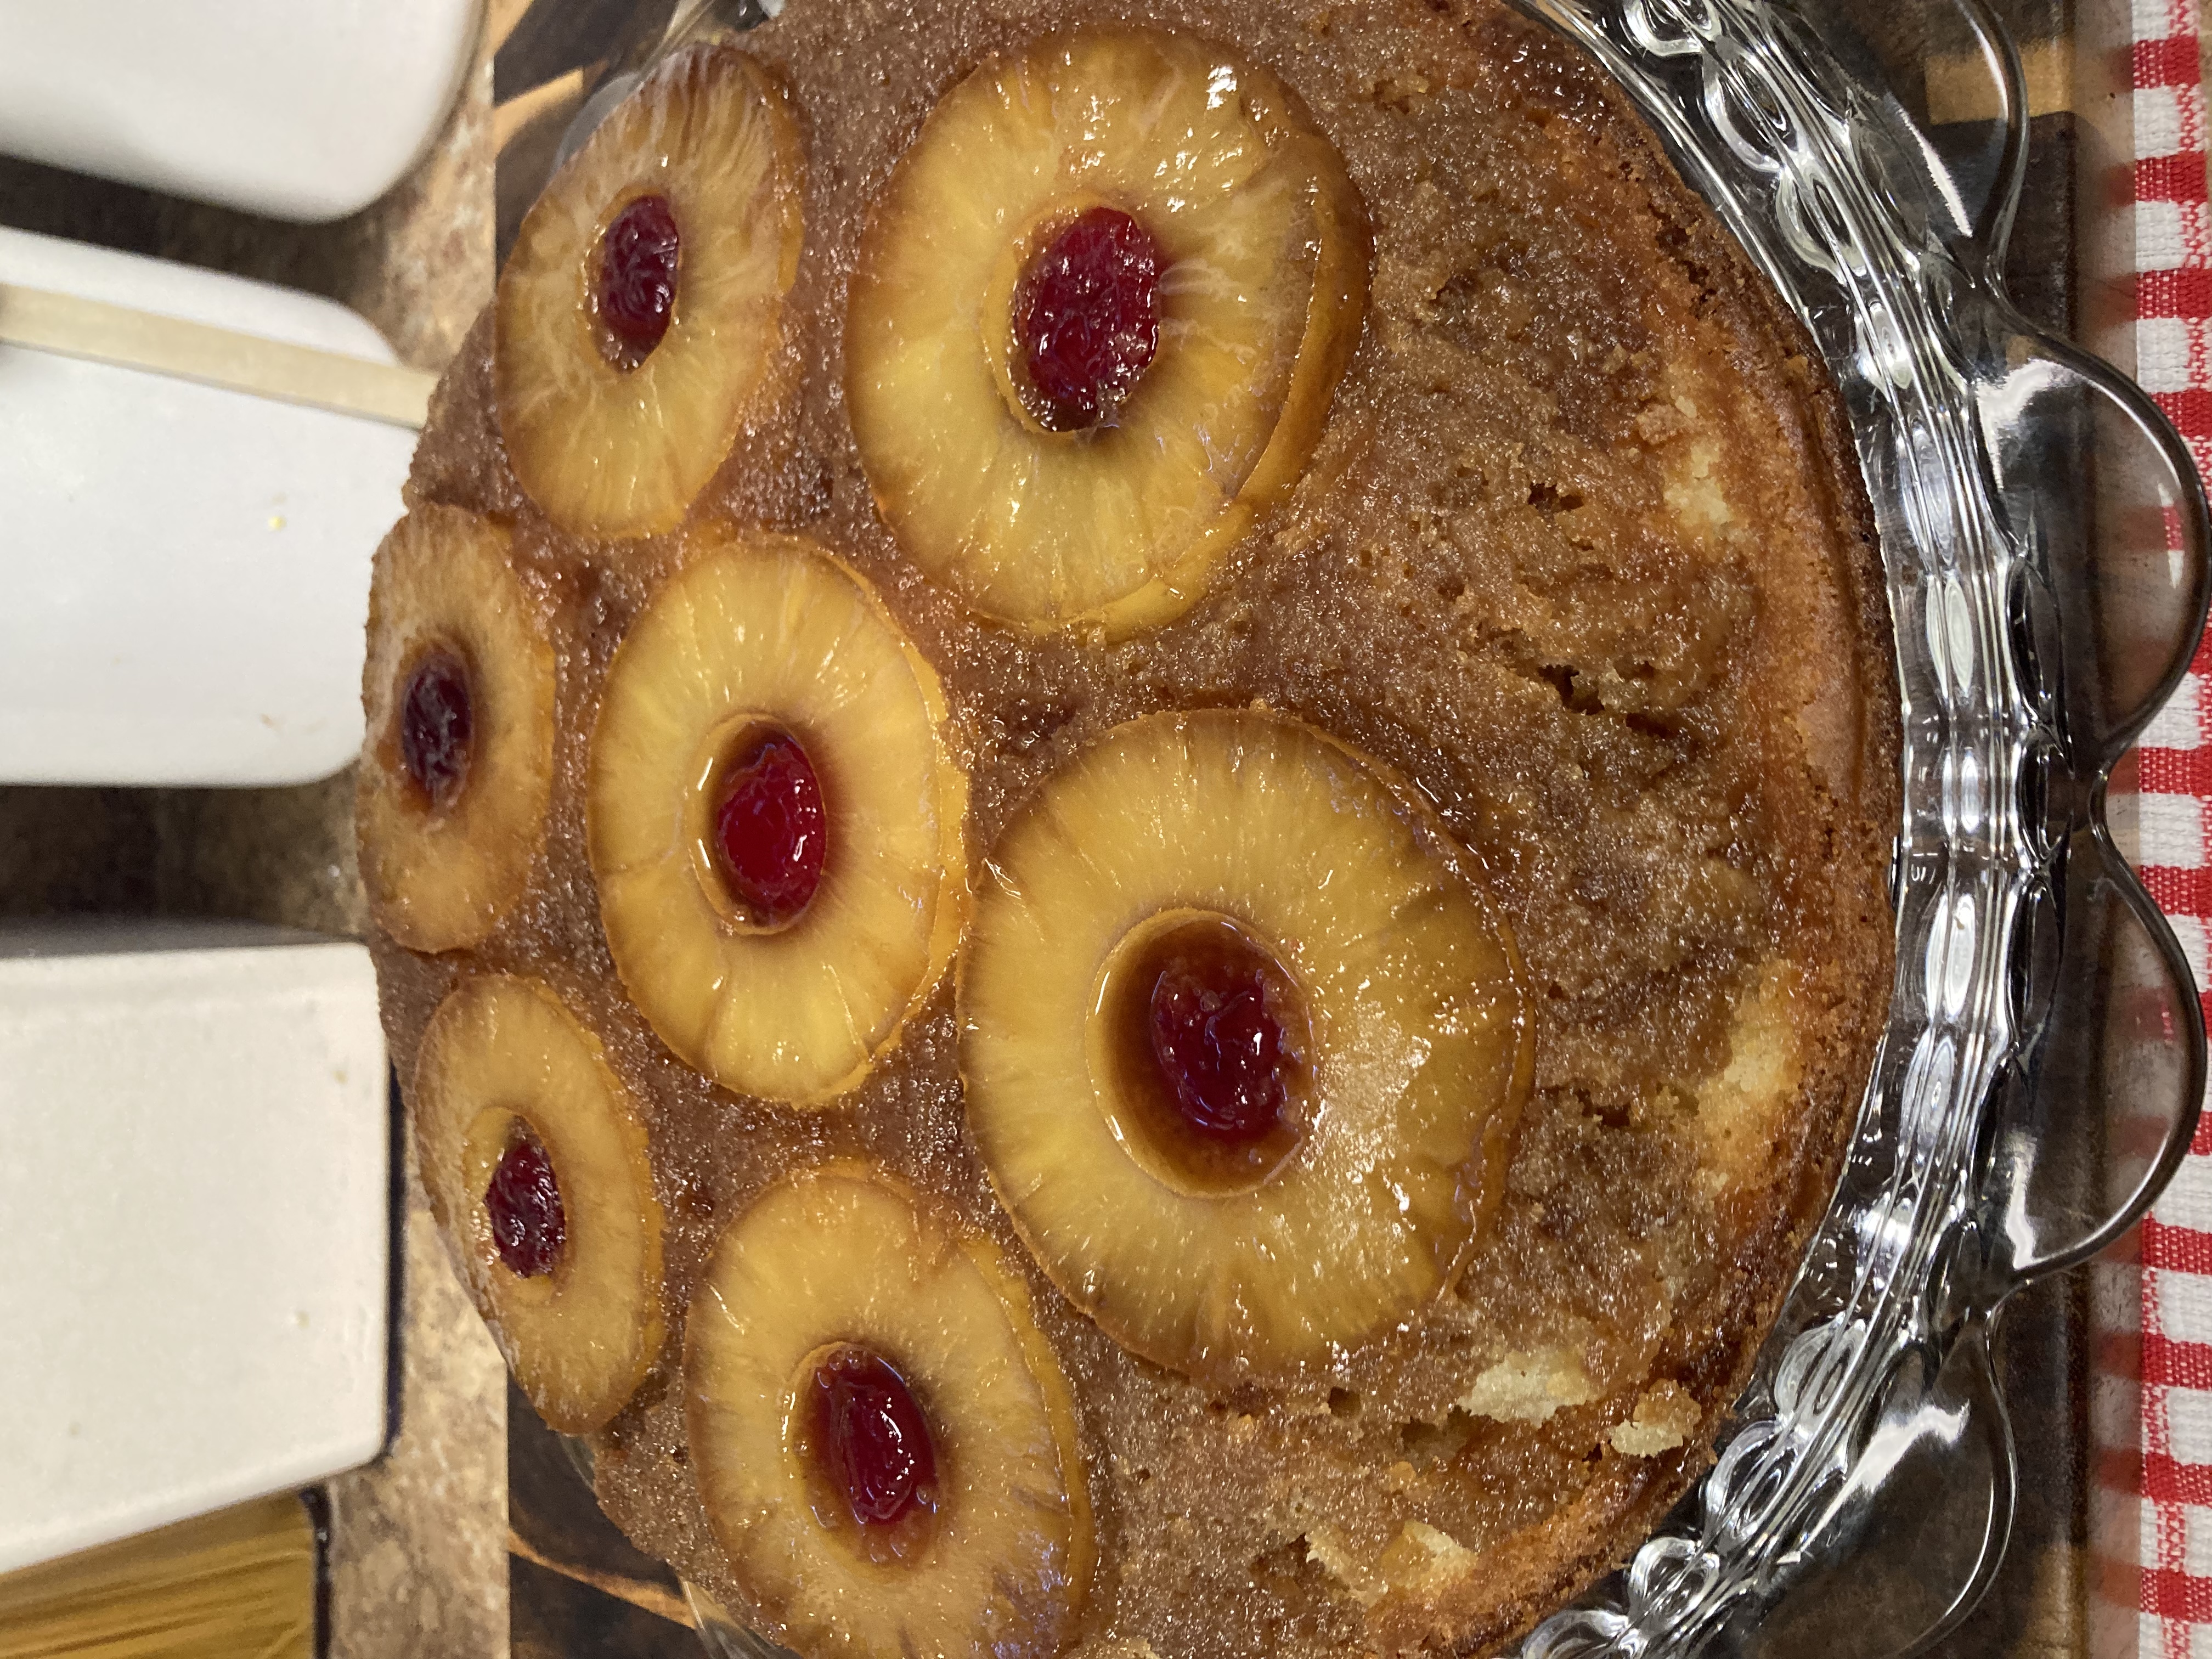 Grandma's Skillet Pineapple Upside-Down Cake fatdave